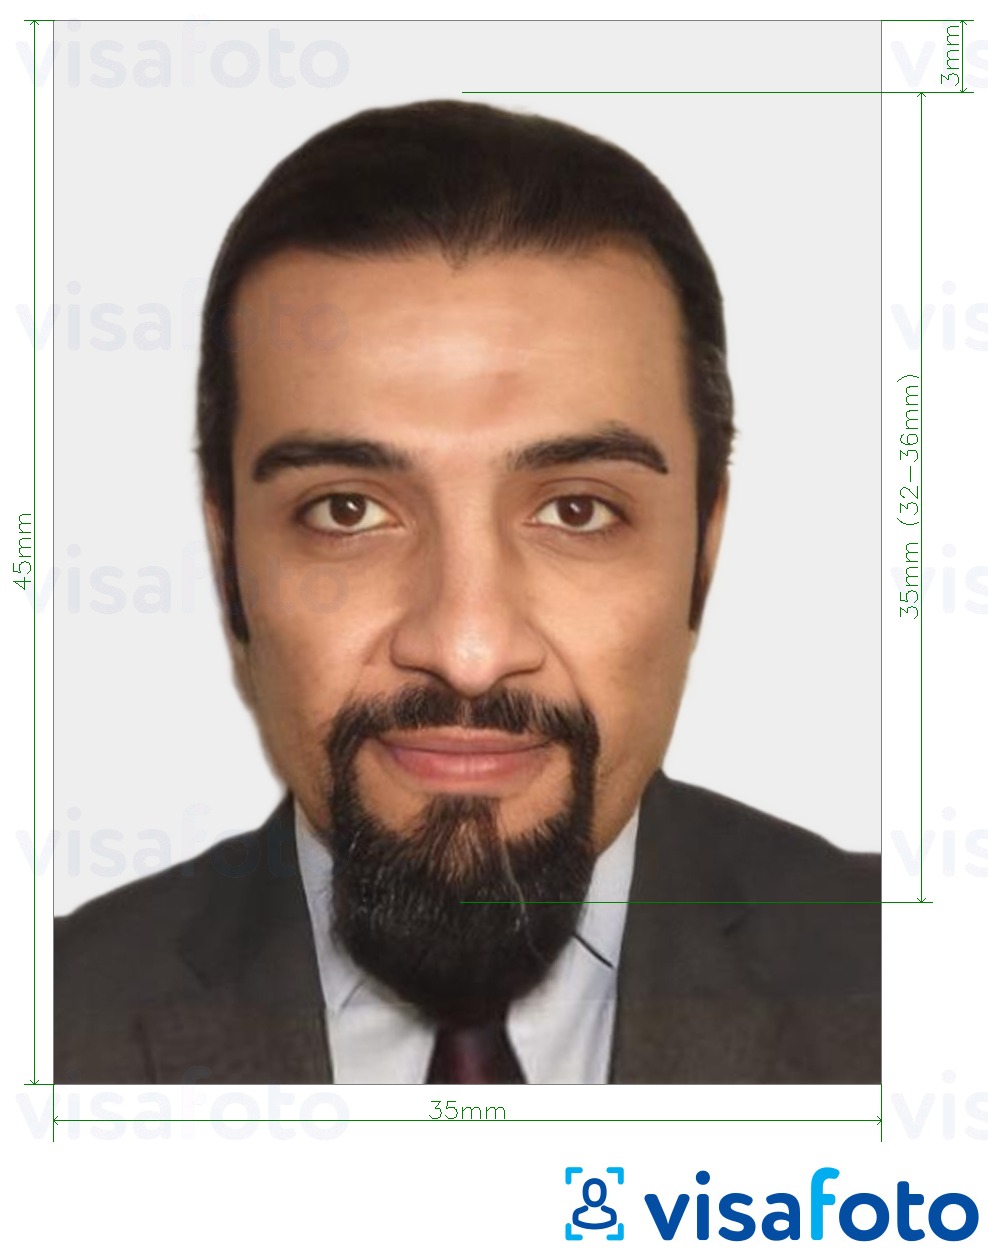 Primjer fotografije za Maroko viza 35x45 mm (3,5x4,5 cm) s točno određenom veličinom